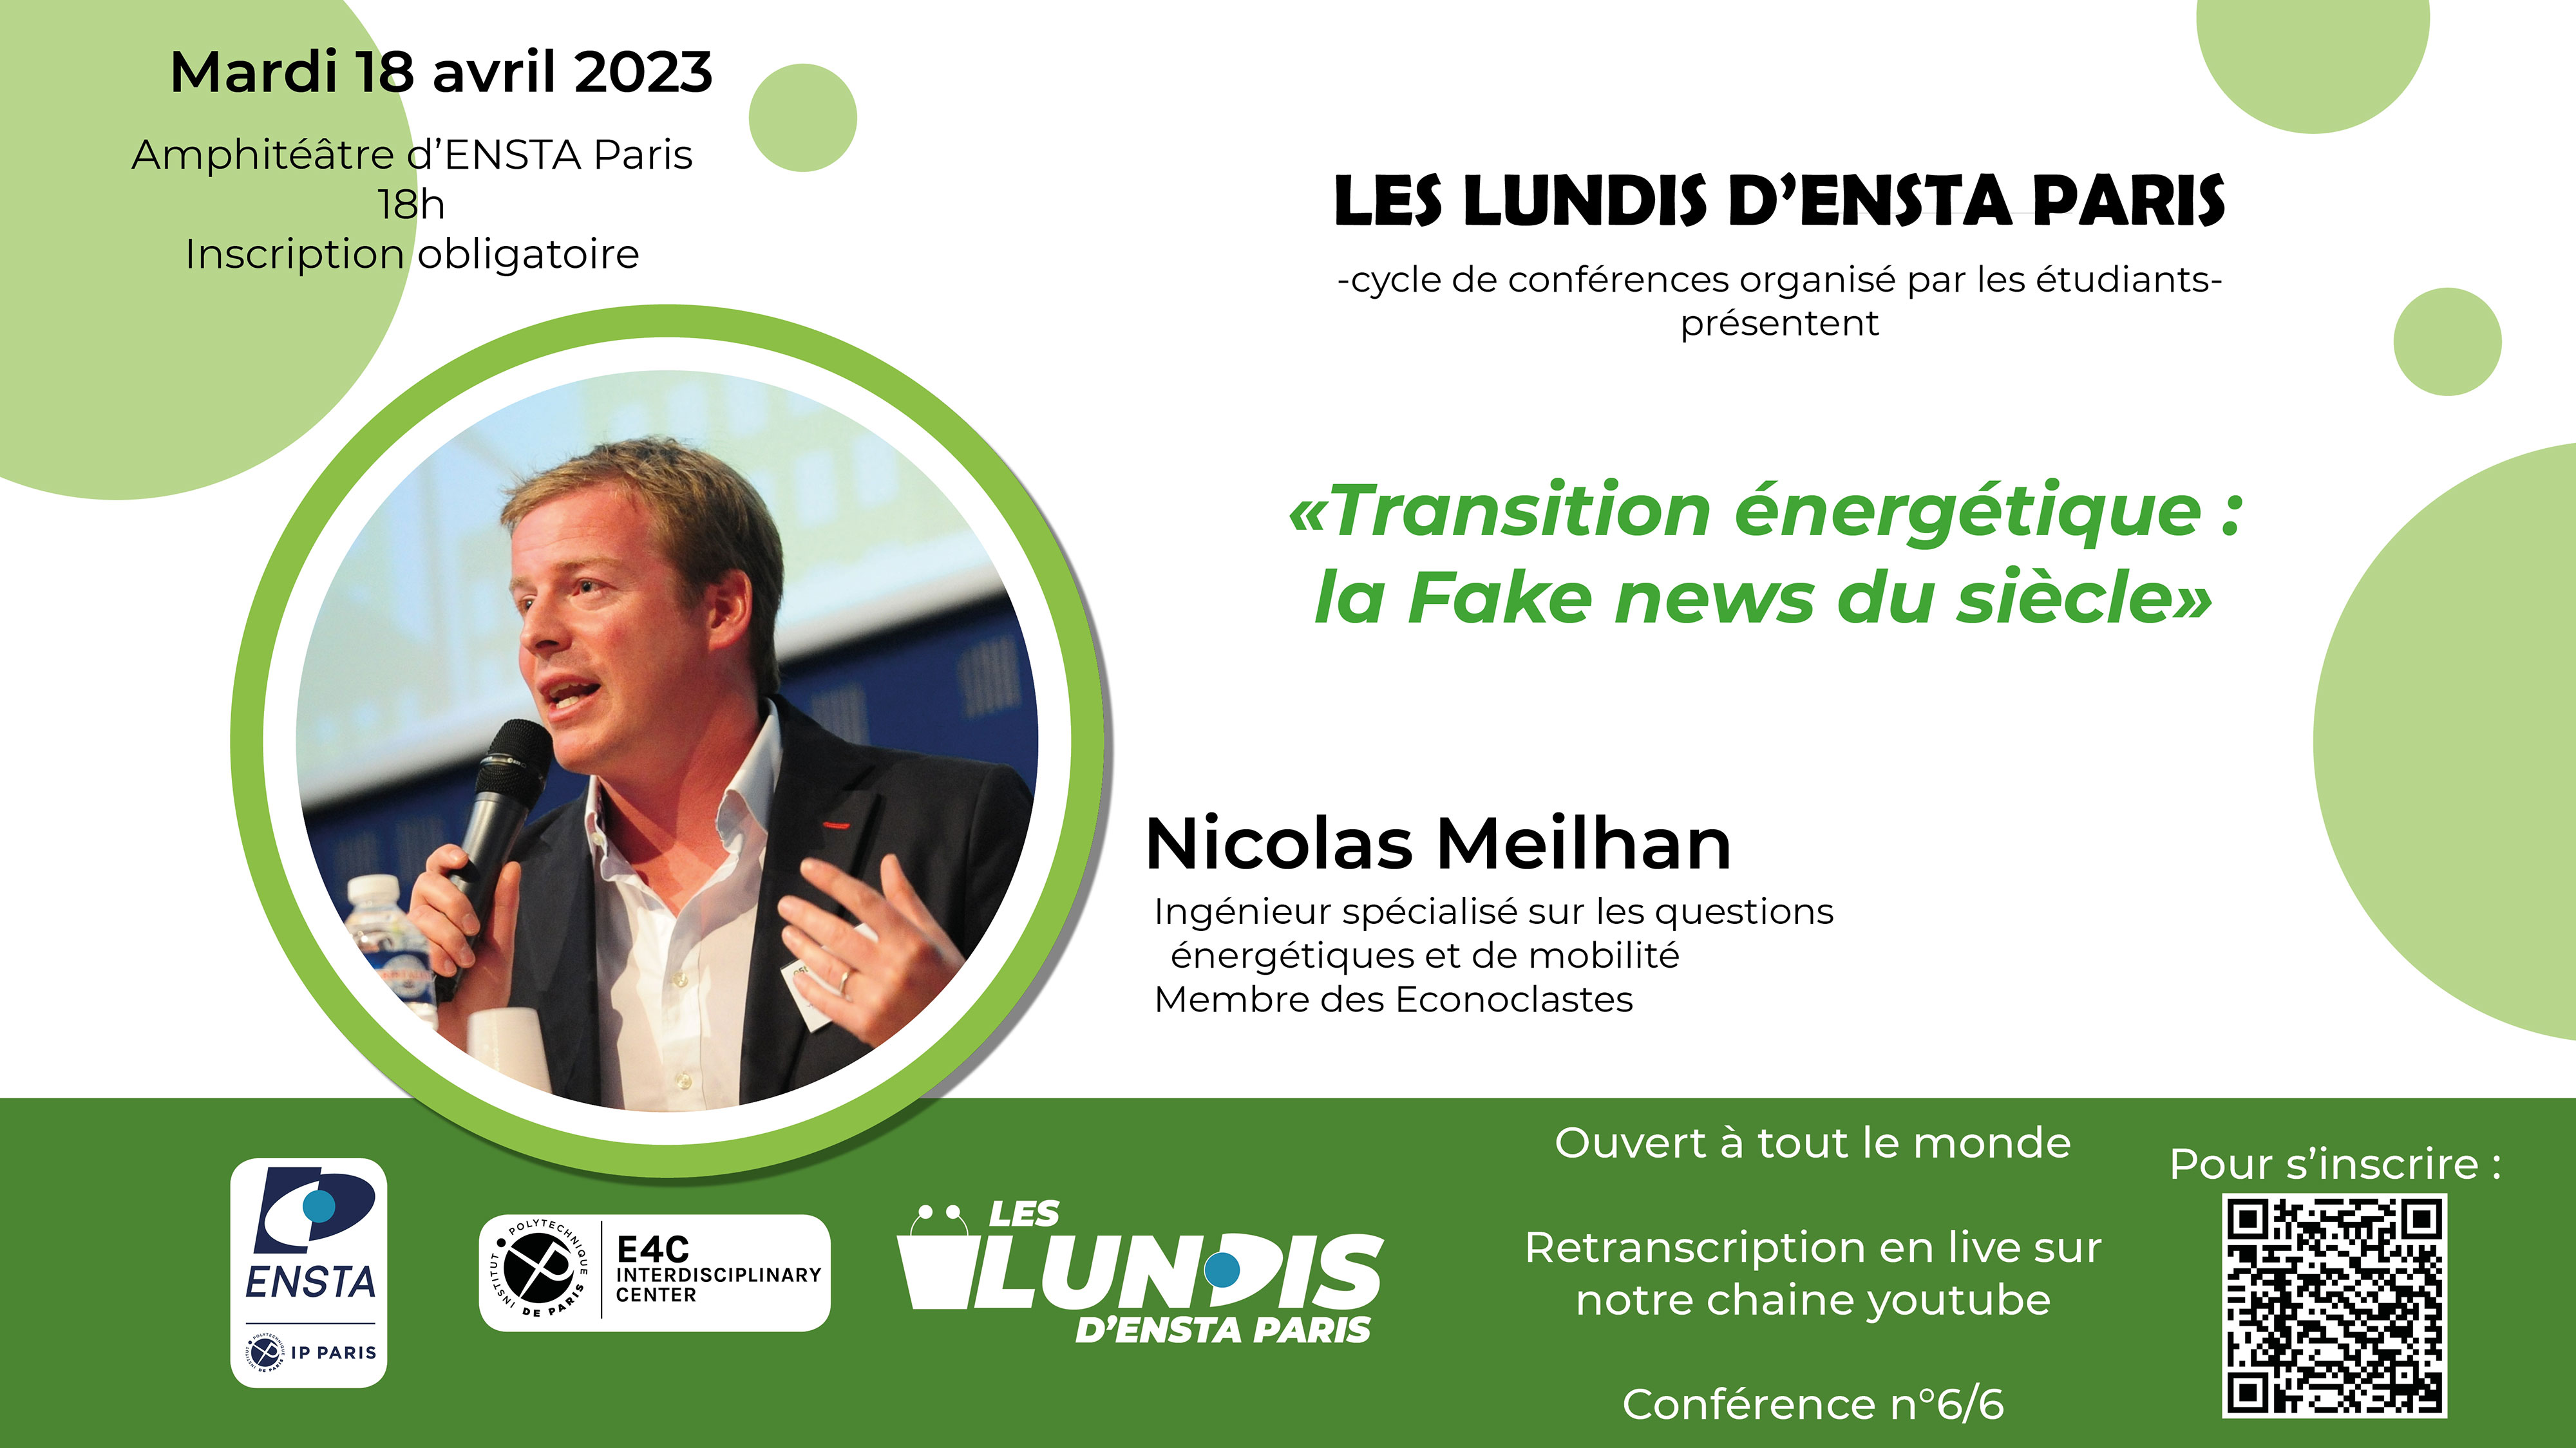 Les Lundis d'ENSTA Paris accueillent Nicolas Meilhan